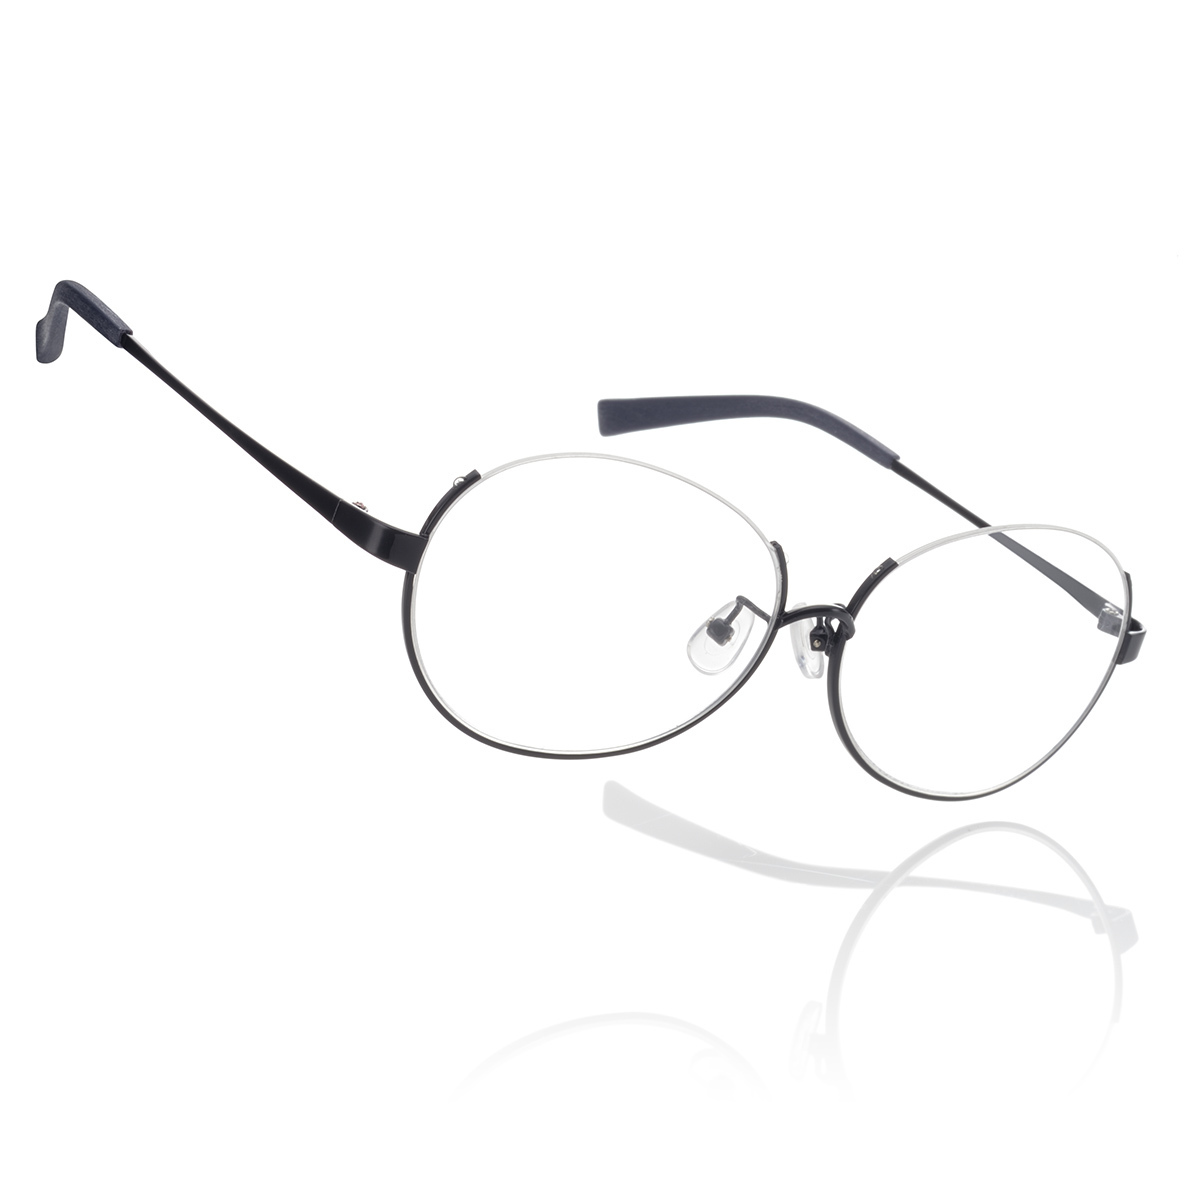 羽川翼 が掛けてるメガネを再現した 羽川翼メガネ が11月に発売